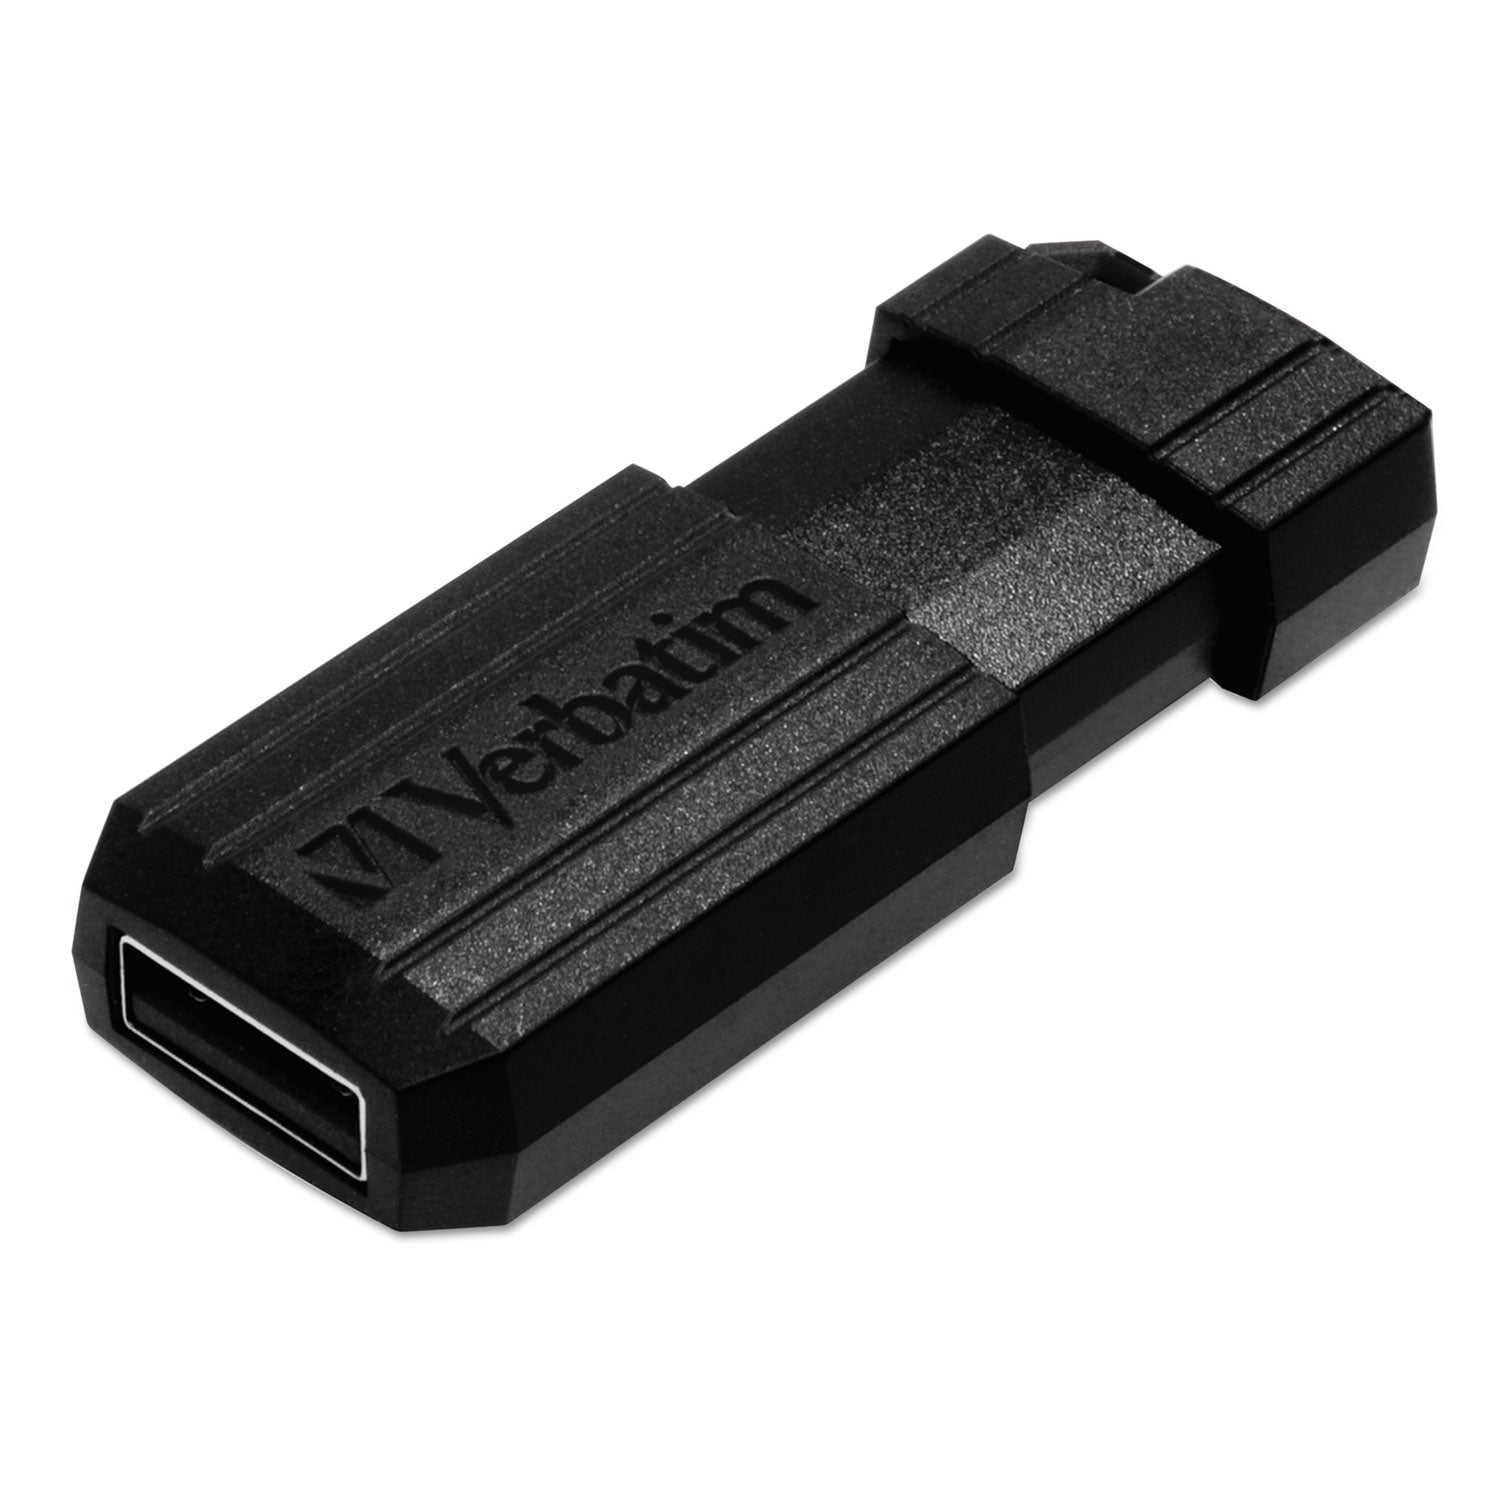 PinStripe USB Flash Drive, 16 GB, Black - 